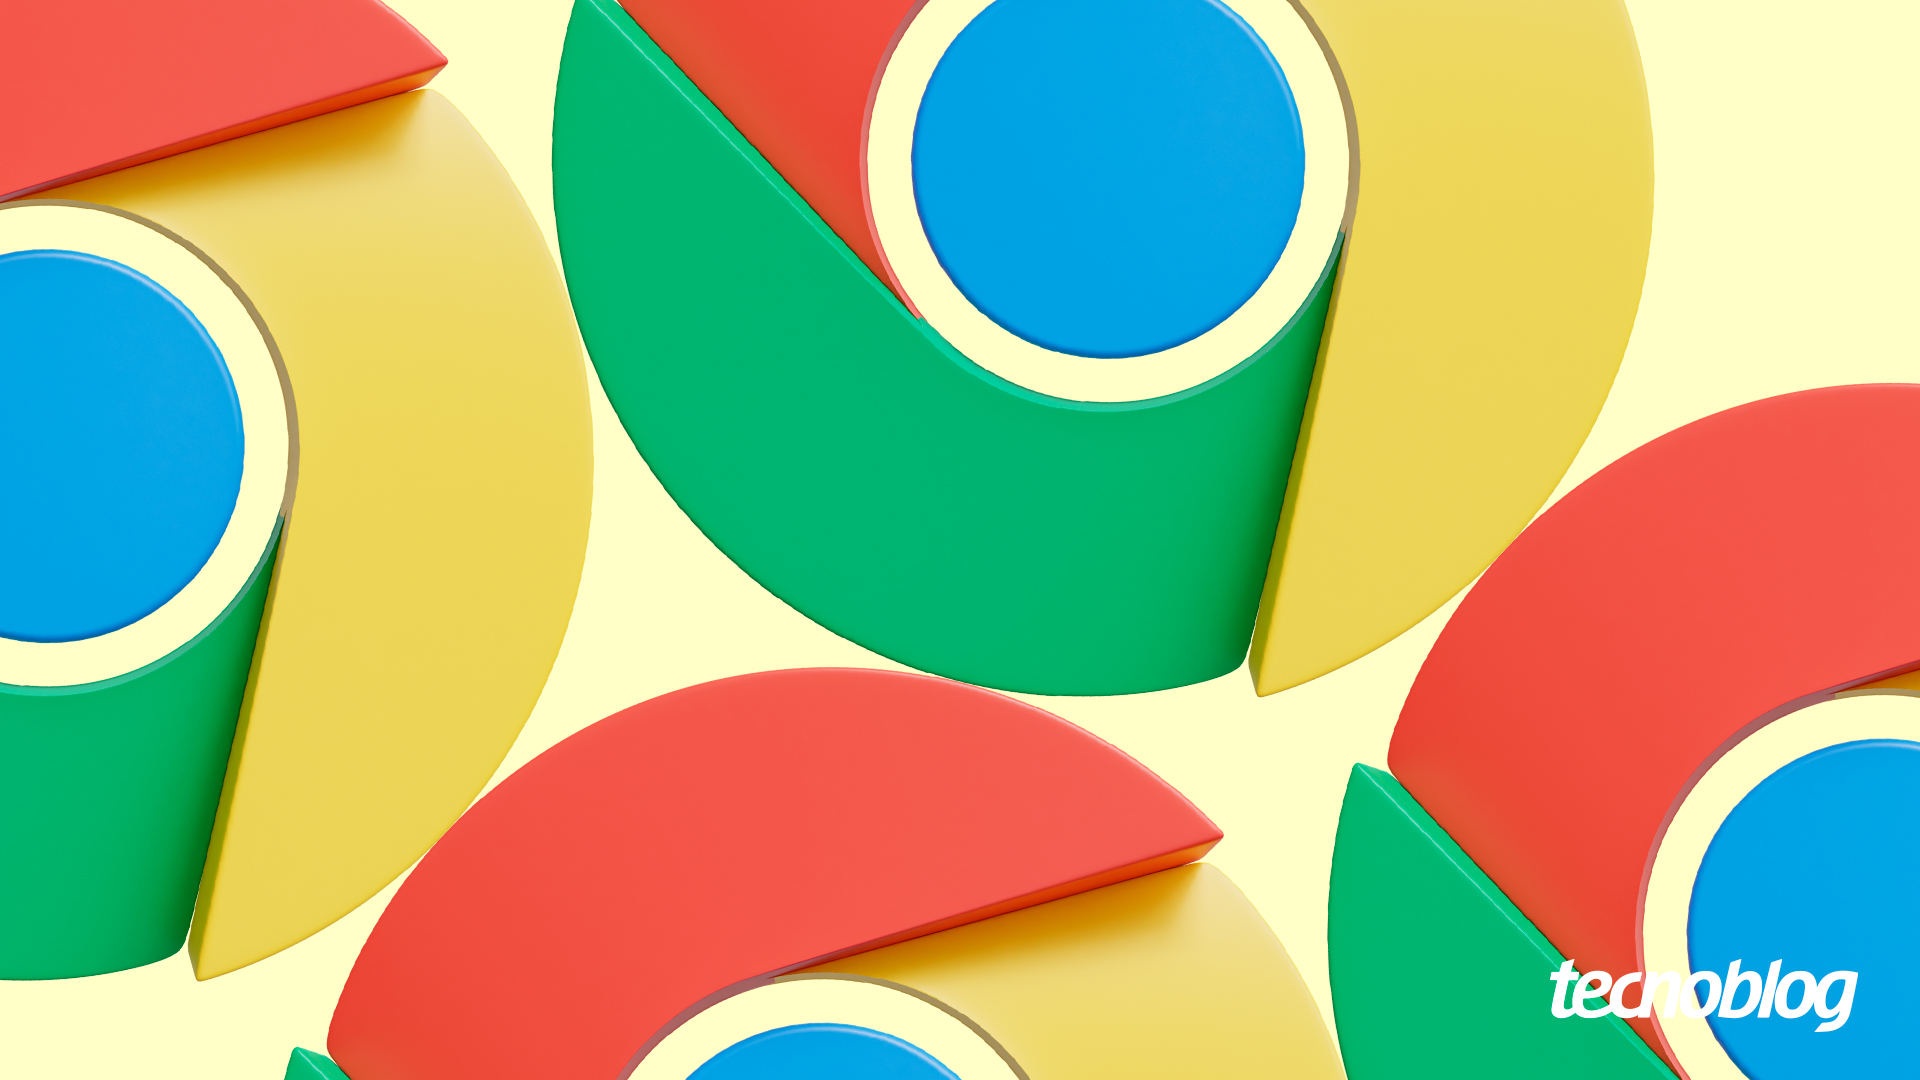 Como atualizar Google Chrome no PC ou celular? É simples e fácil